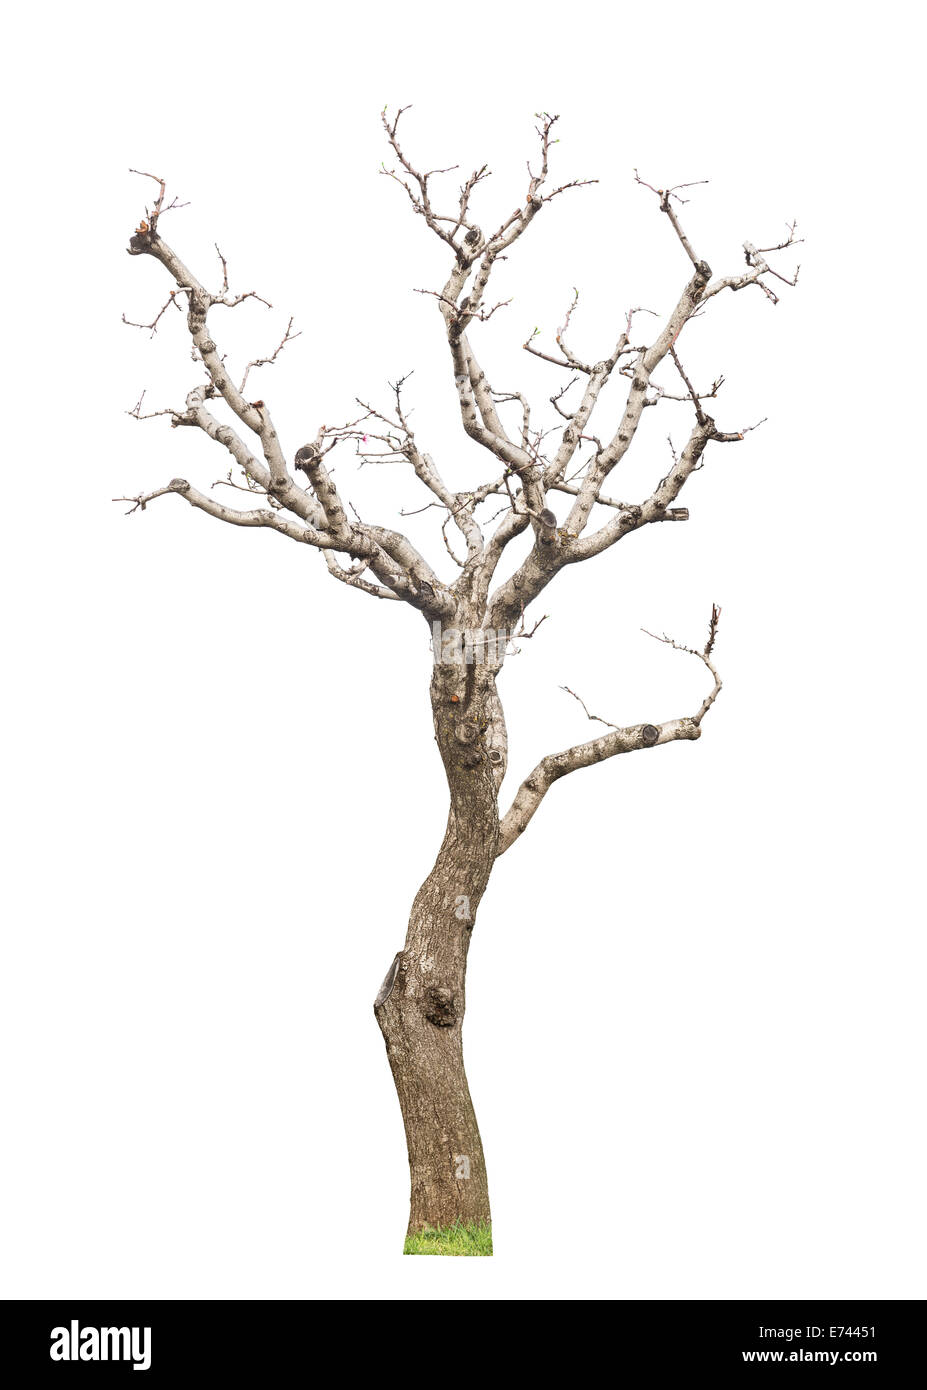 Alter beschnittene Baum mit neuen jungen Blätter und Knospen. Konzept-Leben-Revival und Frühling. Isoliert. Stockfoto